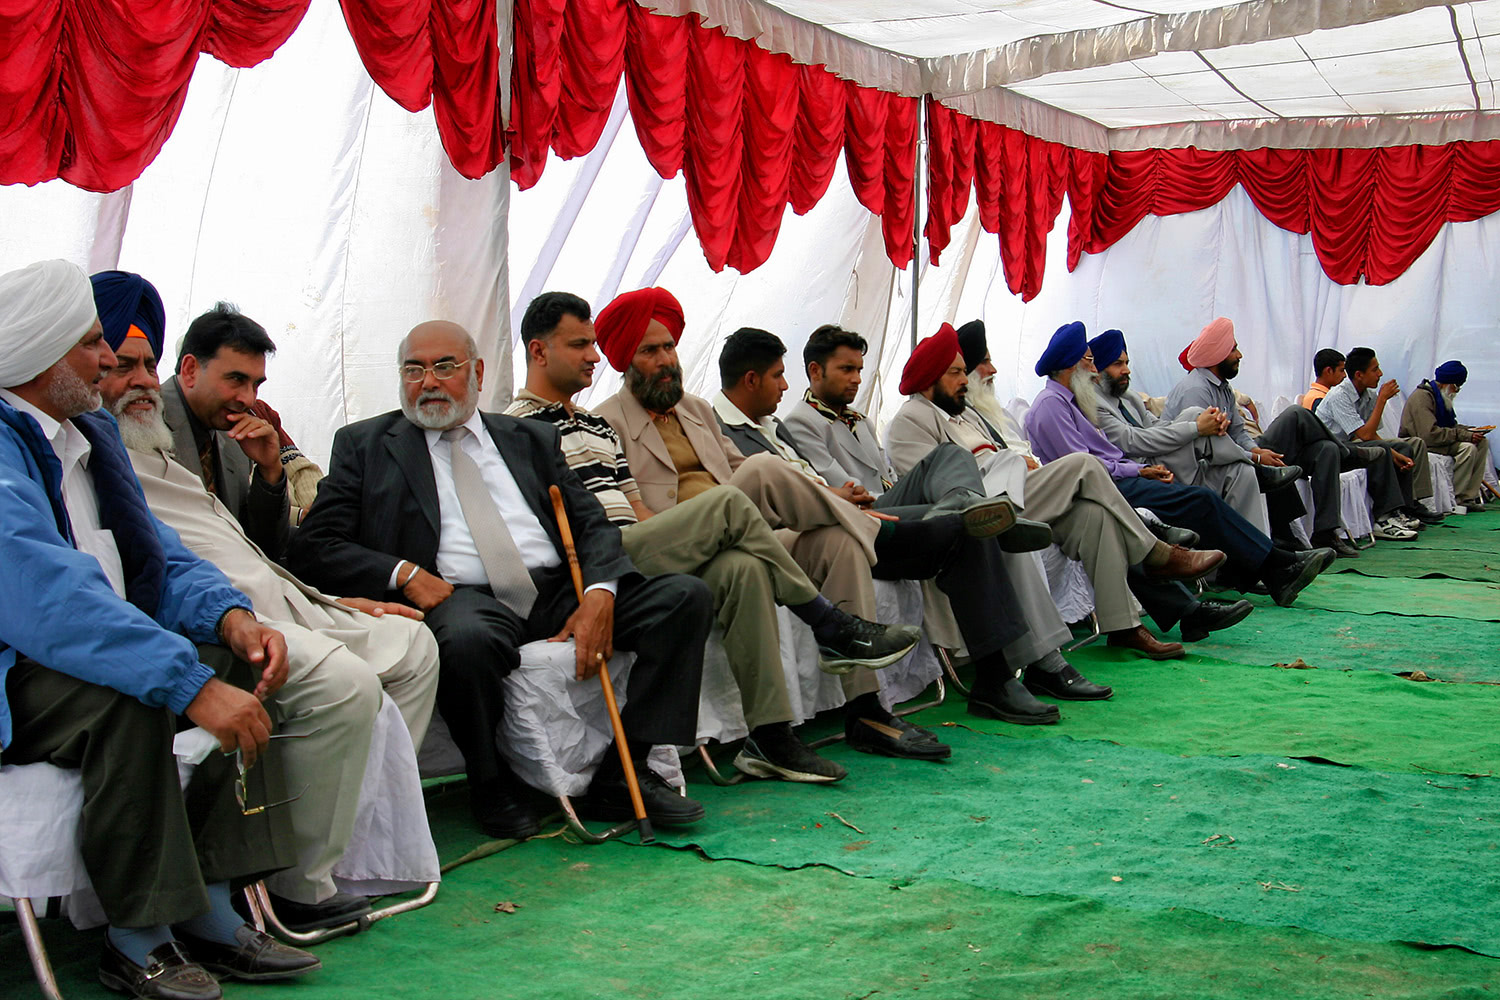 Men sitting at wedding party Punjab